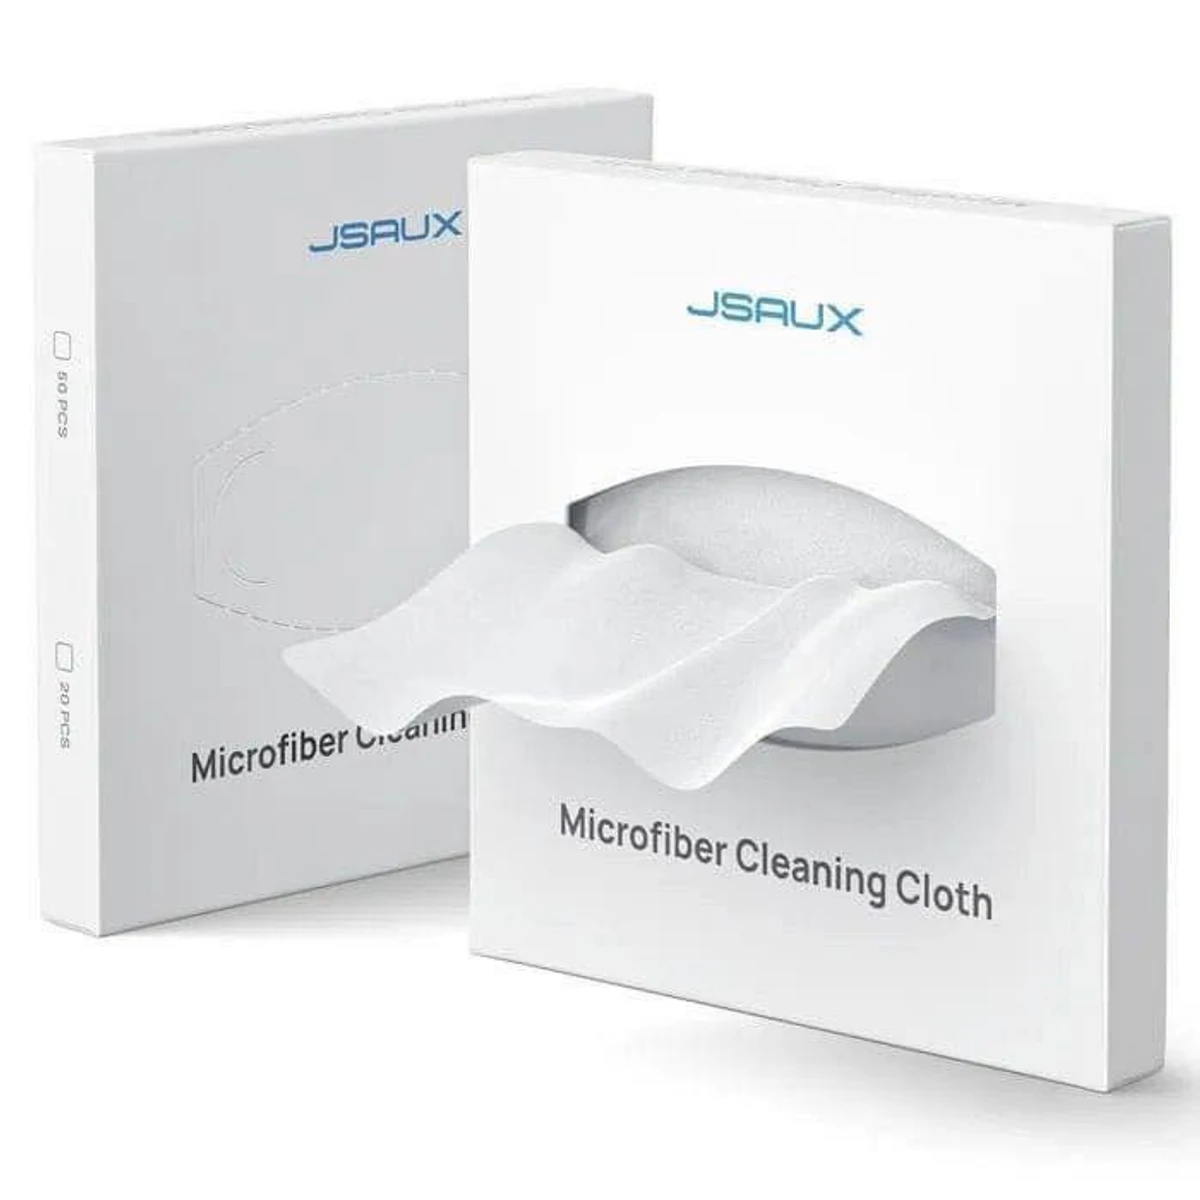 JSAUX Microfiber Cleaning Cloth -50 pcs